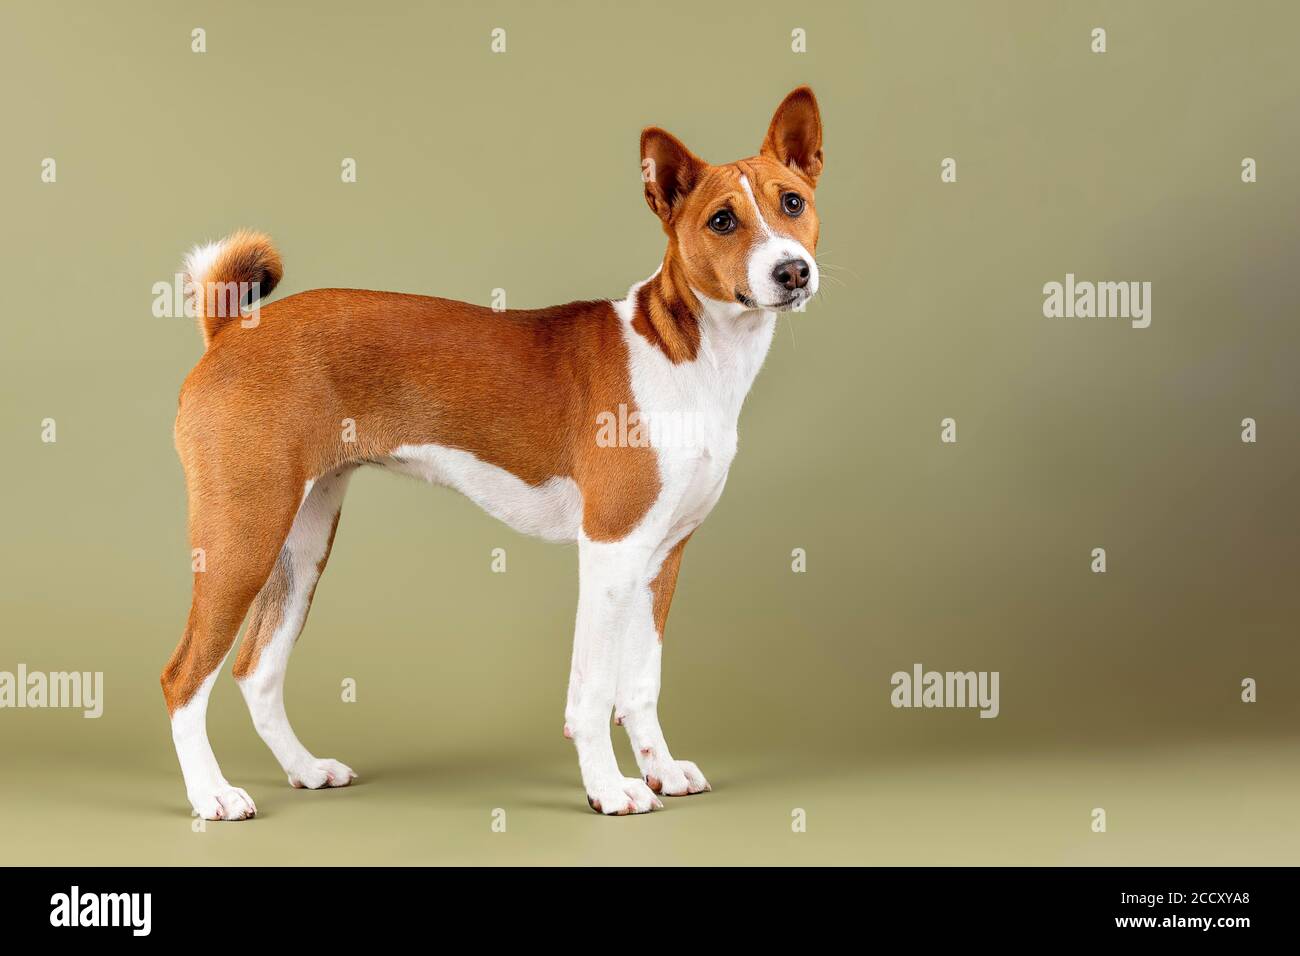 Basenji ou Congo Terrier (Canis lupus familiaris), debout, jeune animal, 6 mois, rouge-blanc, enregistrement studio, Autriche Banque D'Images